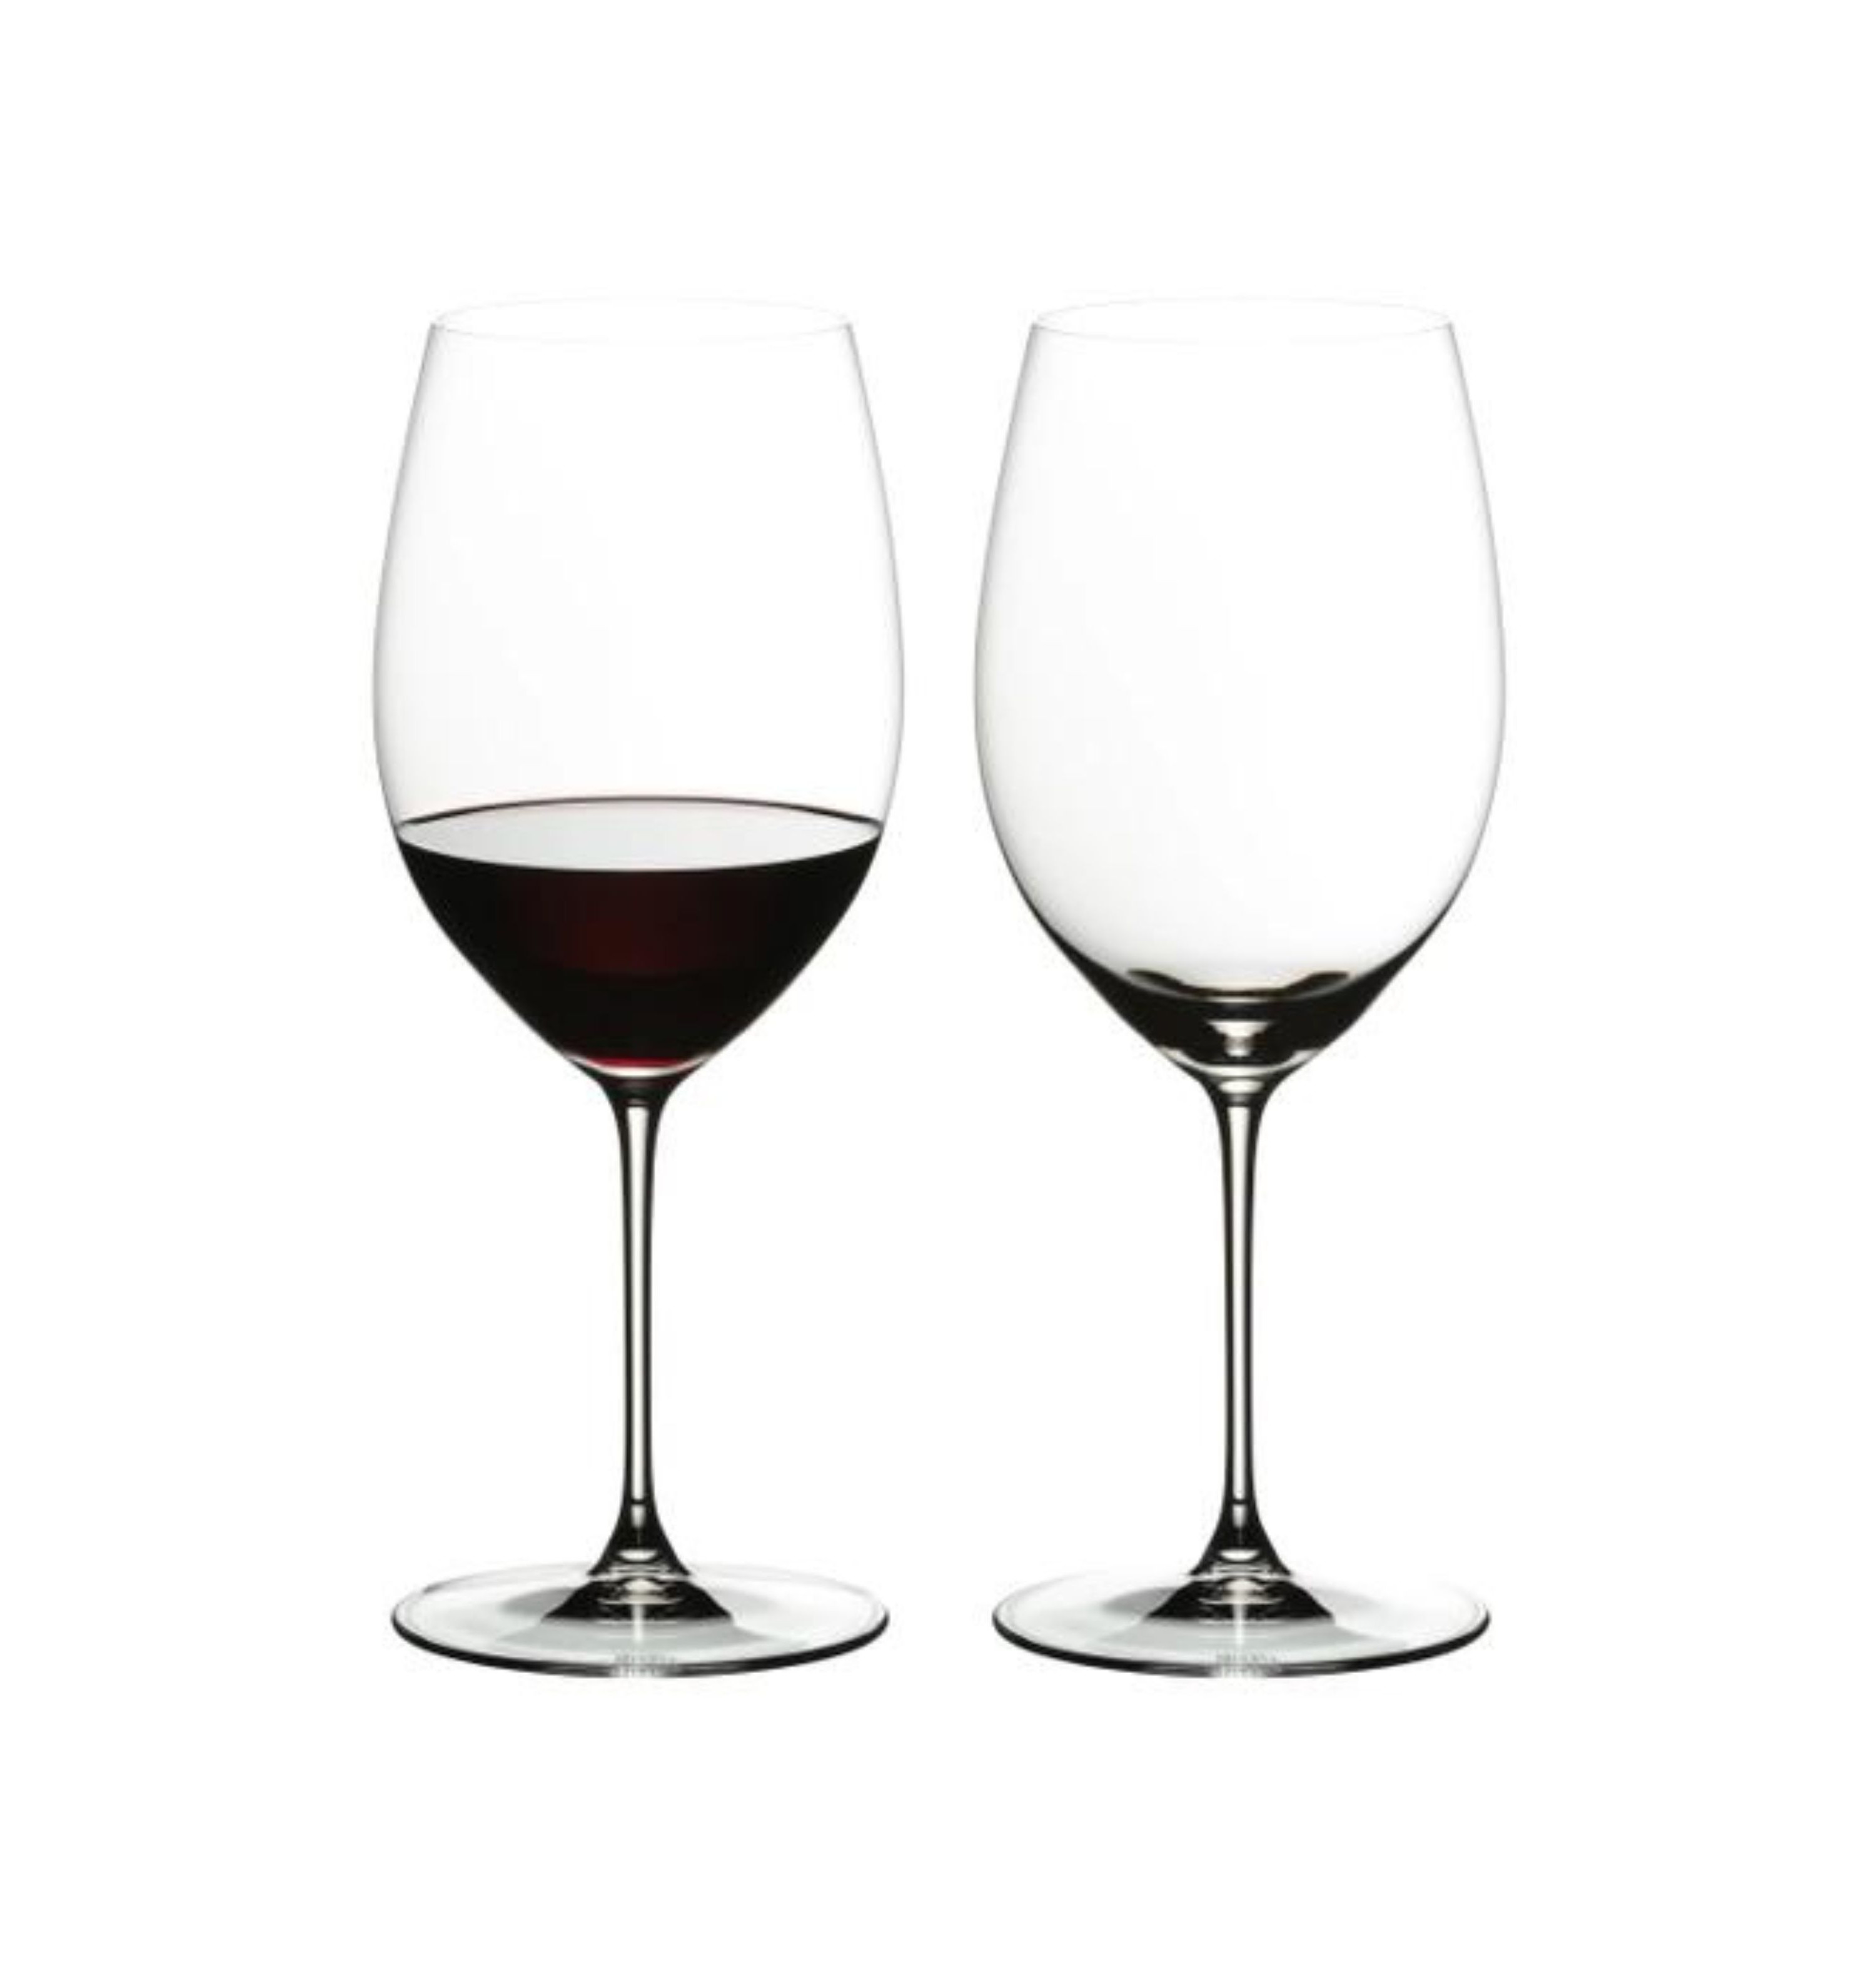 2 glasses Cabernet/Merlot Veloce Riedel 